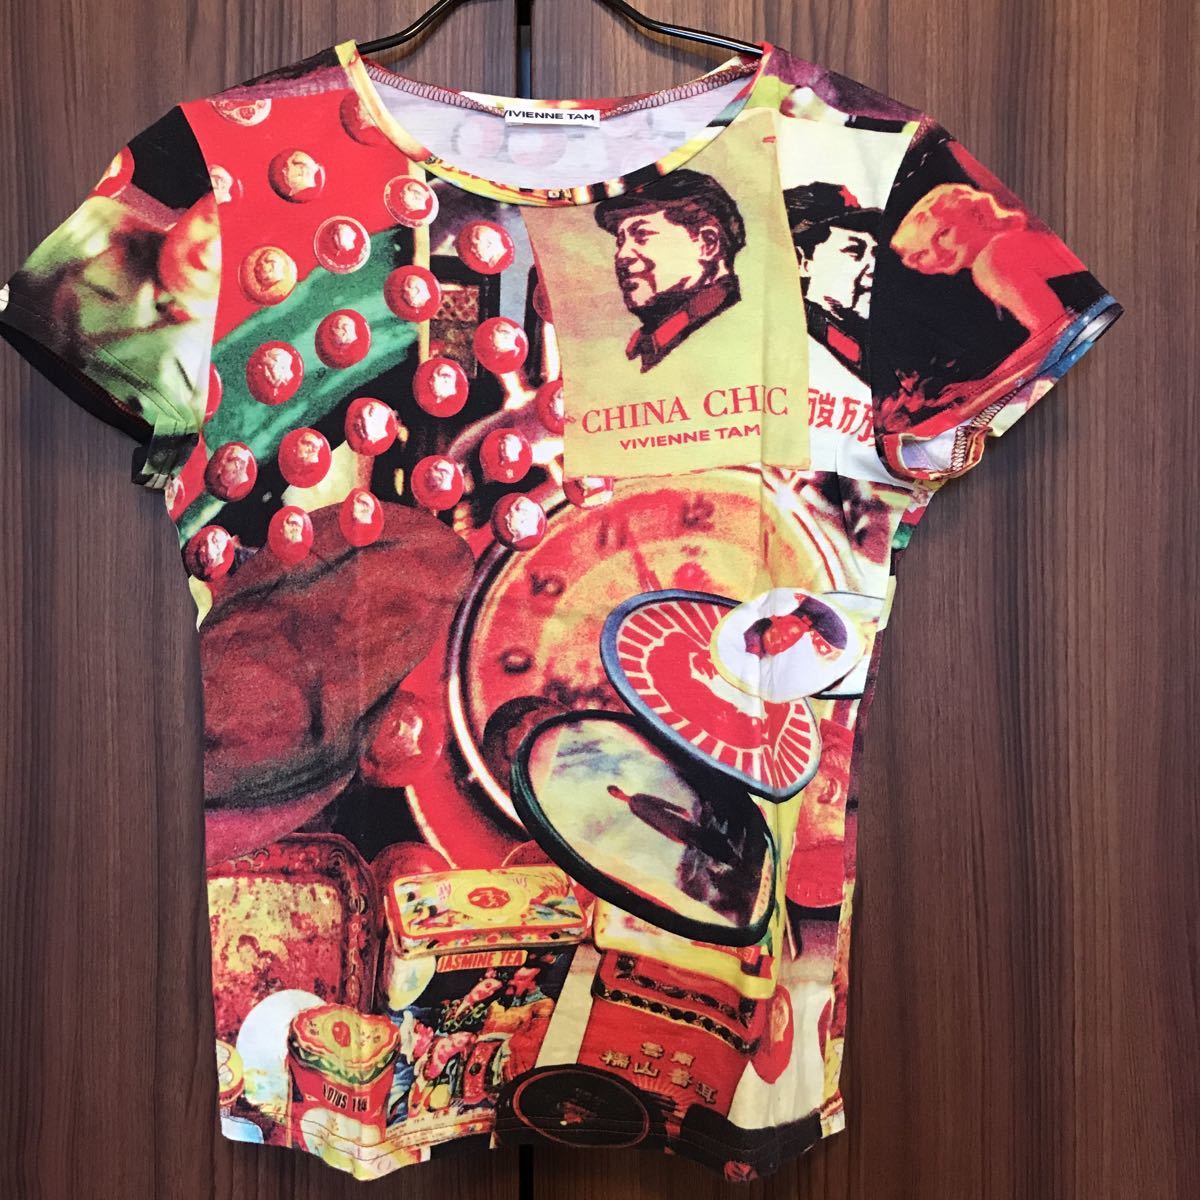 ヴィヴィアンタム VIVIENNE TAM レア ヴィンテージ MAO COLLECTION Tシャツ 90´s 毛沢東 珍品 アーカイブ CHINA CHIC Vintage T-shirt